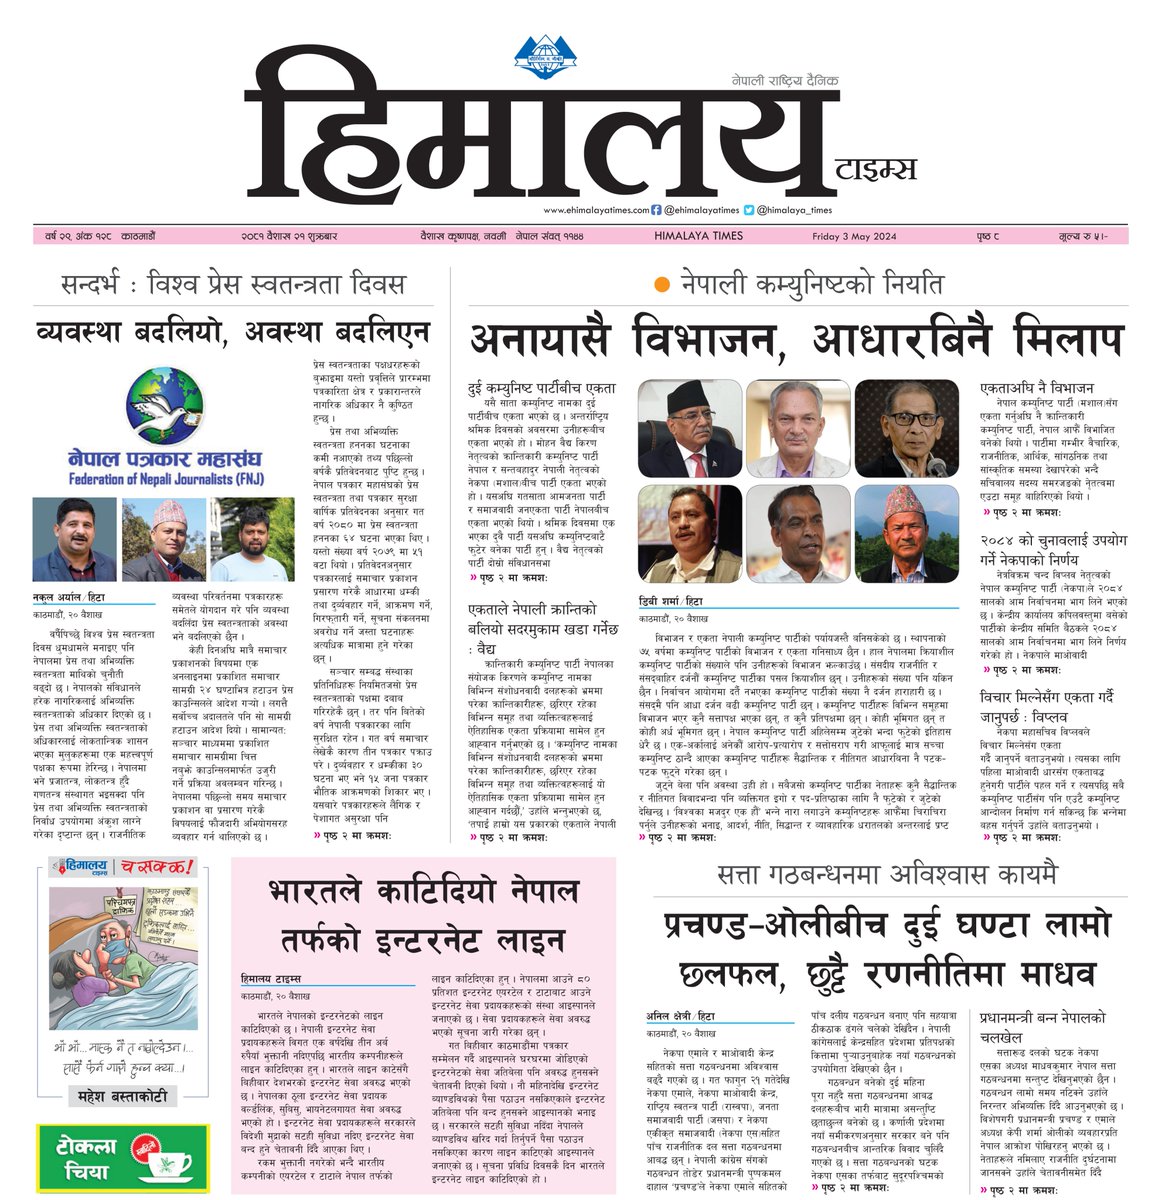 ⭕️ आज २o८१ बैशाख २१ शुक्रबारको हिमालय टाइम्स पत्रिका पढ्नुहोस् ।
- हाम्रो नेपाली अनलाइन ehimalayatimes.com र अंग्रेजी अनलाइन english.himalayatimes.com.np मा ताजा समाचार पढ्न सक्नुहुन्छ ।
#HimalayaTimes #Hita #nepalinews #dailynewspaper #BreakingNews #epaper #nepalinewspaper